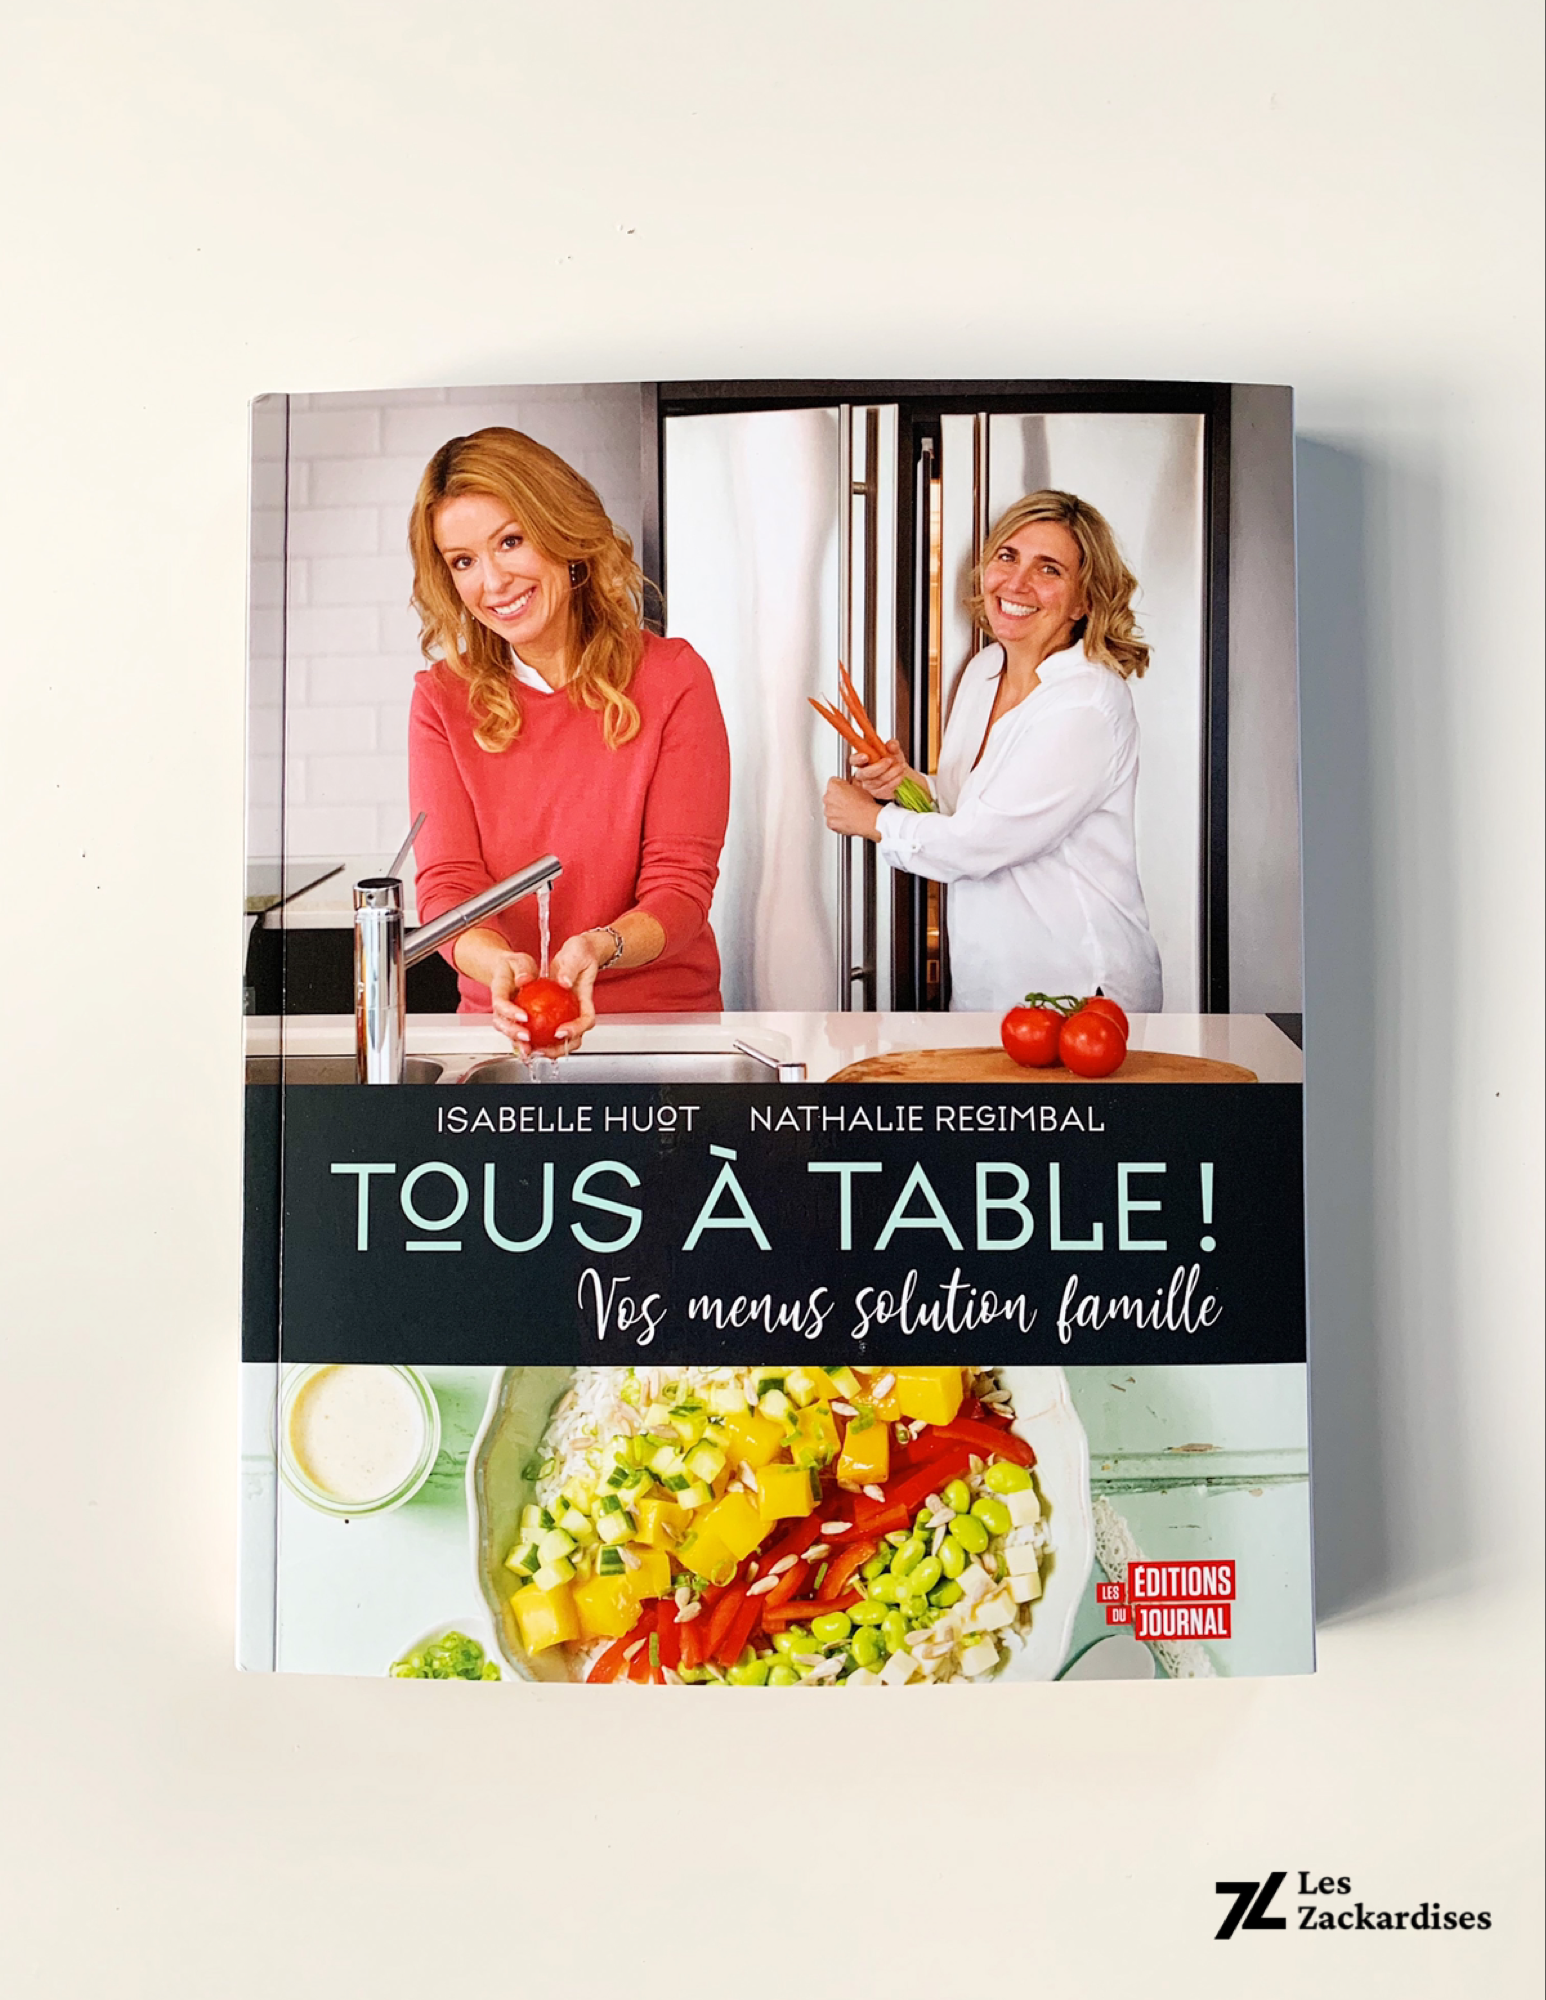 «Tous à table!»: Nouveau livre de recettes pour Isabelle Huot et Nathalie Regimbal